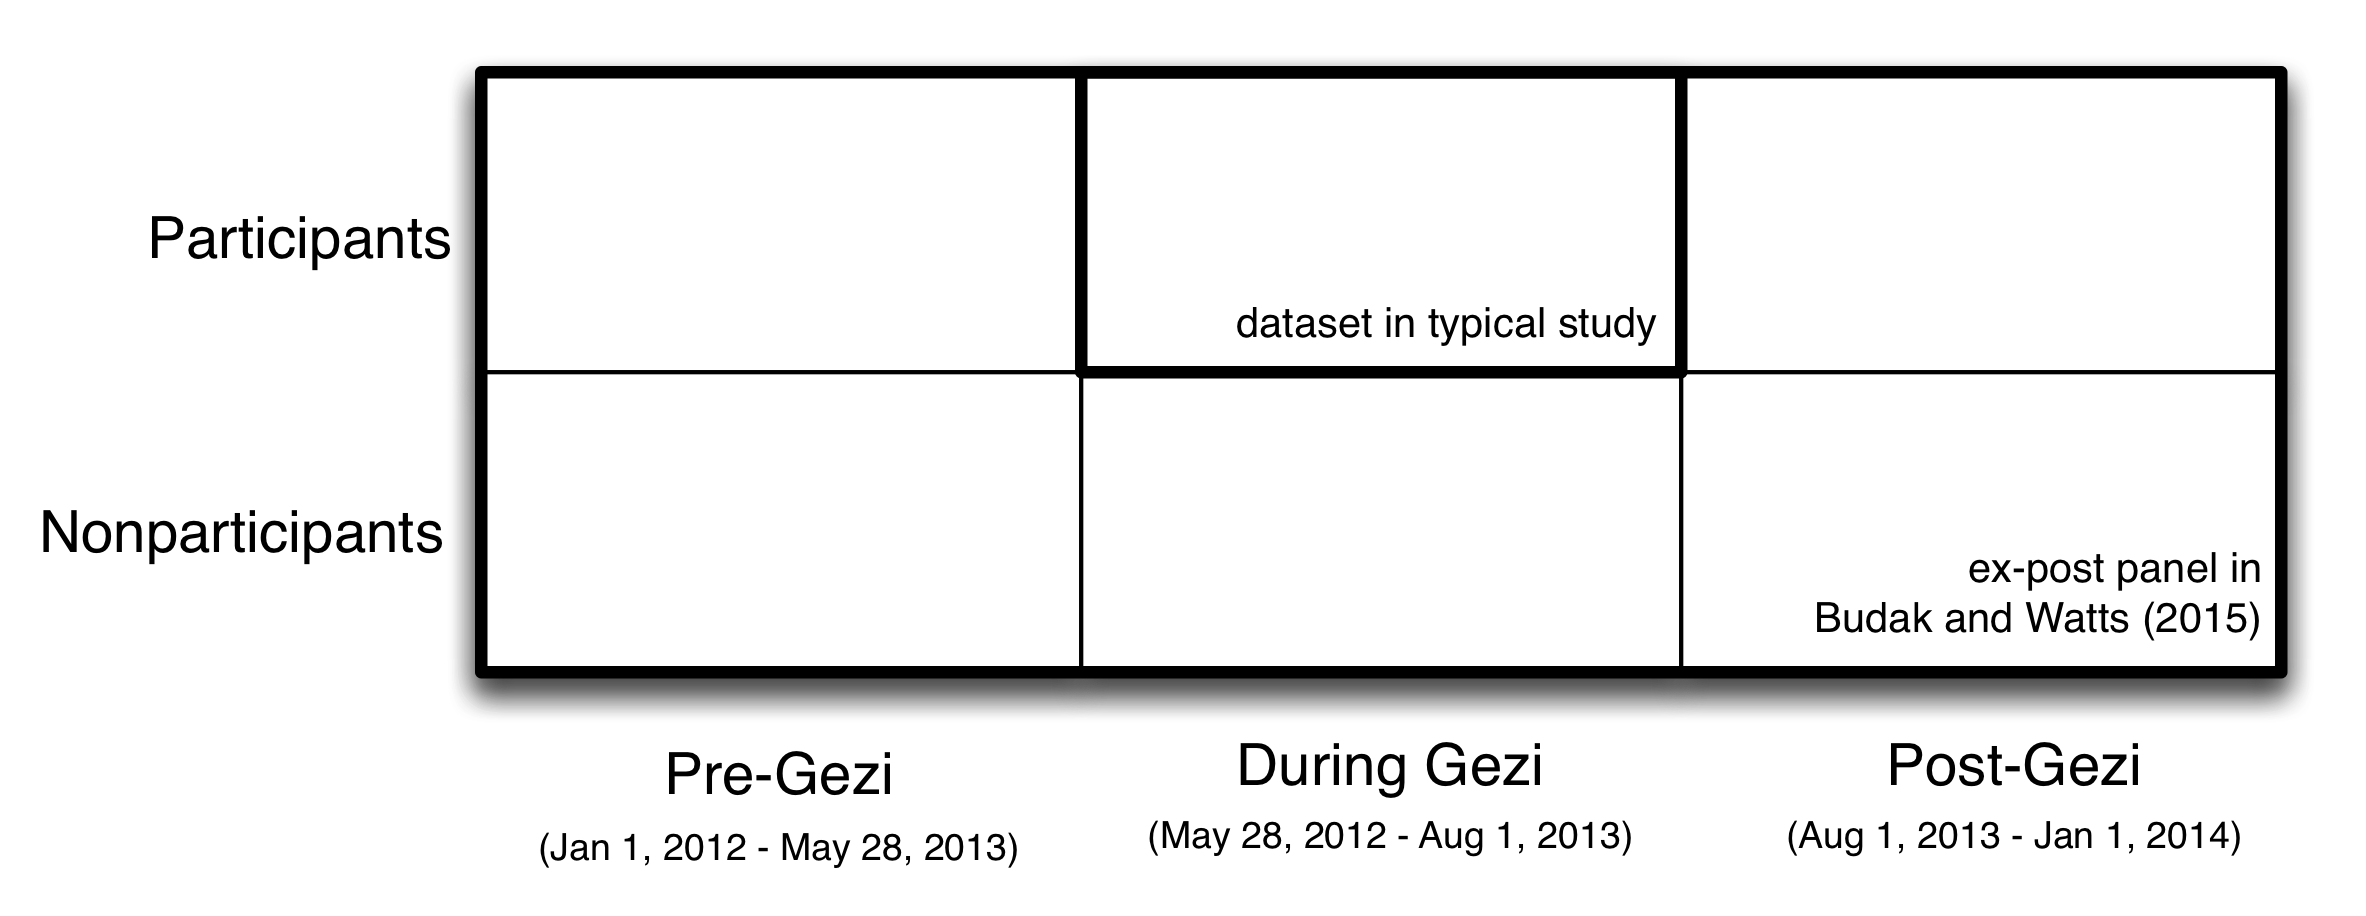 Obrázok 2.2: Návrh, ktorý používajú Budak a Watts (2015) na štúdium protestov Occupy Gezi v Turecku v lete roku 2013. Využitím neustálej povahy Twitteru vytvorili vedci to, čo nazvali ex-post panelom, 30 000 ľudí za dva roky. Na rozdiel od typickej štúdie zameranej na účastníkov počas protestov, ex-post panel pridáva 1) údaje od účastníkov pred a po udalosti a 2) údaje od účastníkov pred, počas a po udalosti. Táto obohatená štruktúra údajov umožnila Budakovi a Wattsovi odhadnúť, aké druhy ľudí sa častejšie zúčastňujú protestov Gezi a odhadnúť zmeny v postojoch účastníkov a neúčasti v krátkodobom časovom horizonte (porovnanie pre Gezi s Gezi ) a z dlhodobého hľadiska (porovnávanie pre-Gezi s post-Gezi).